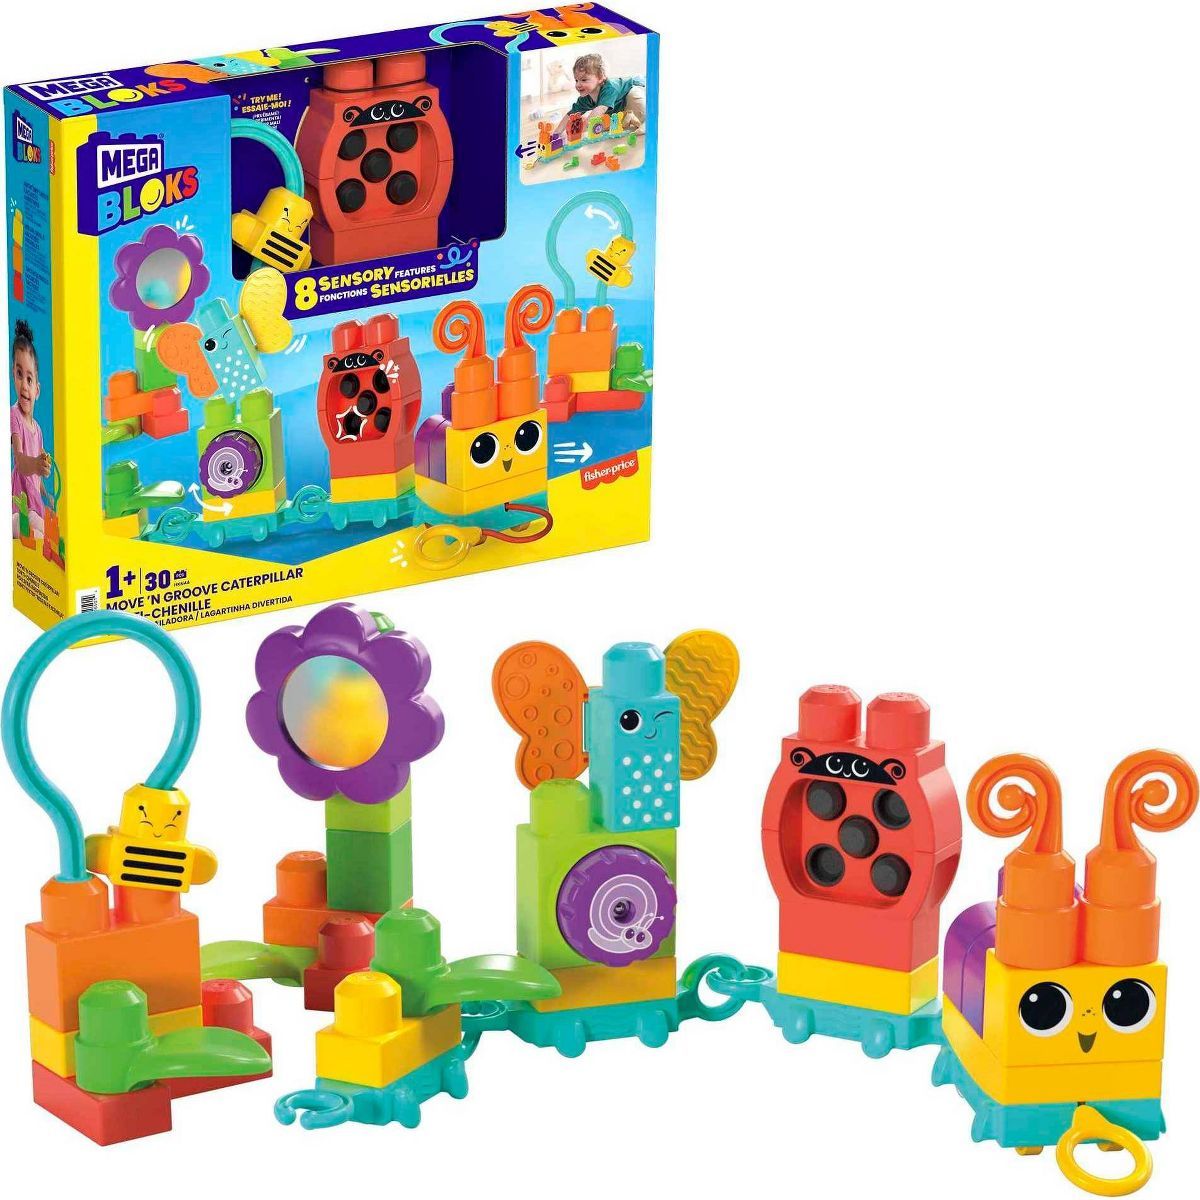 MEGA BLOKS Move n Groove Caterpillar Sensory Building Toys (30 pc) | Target